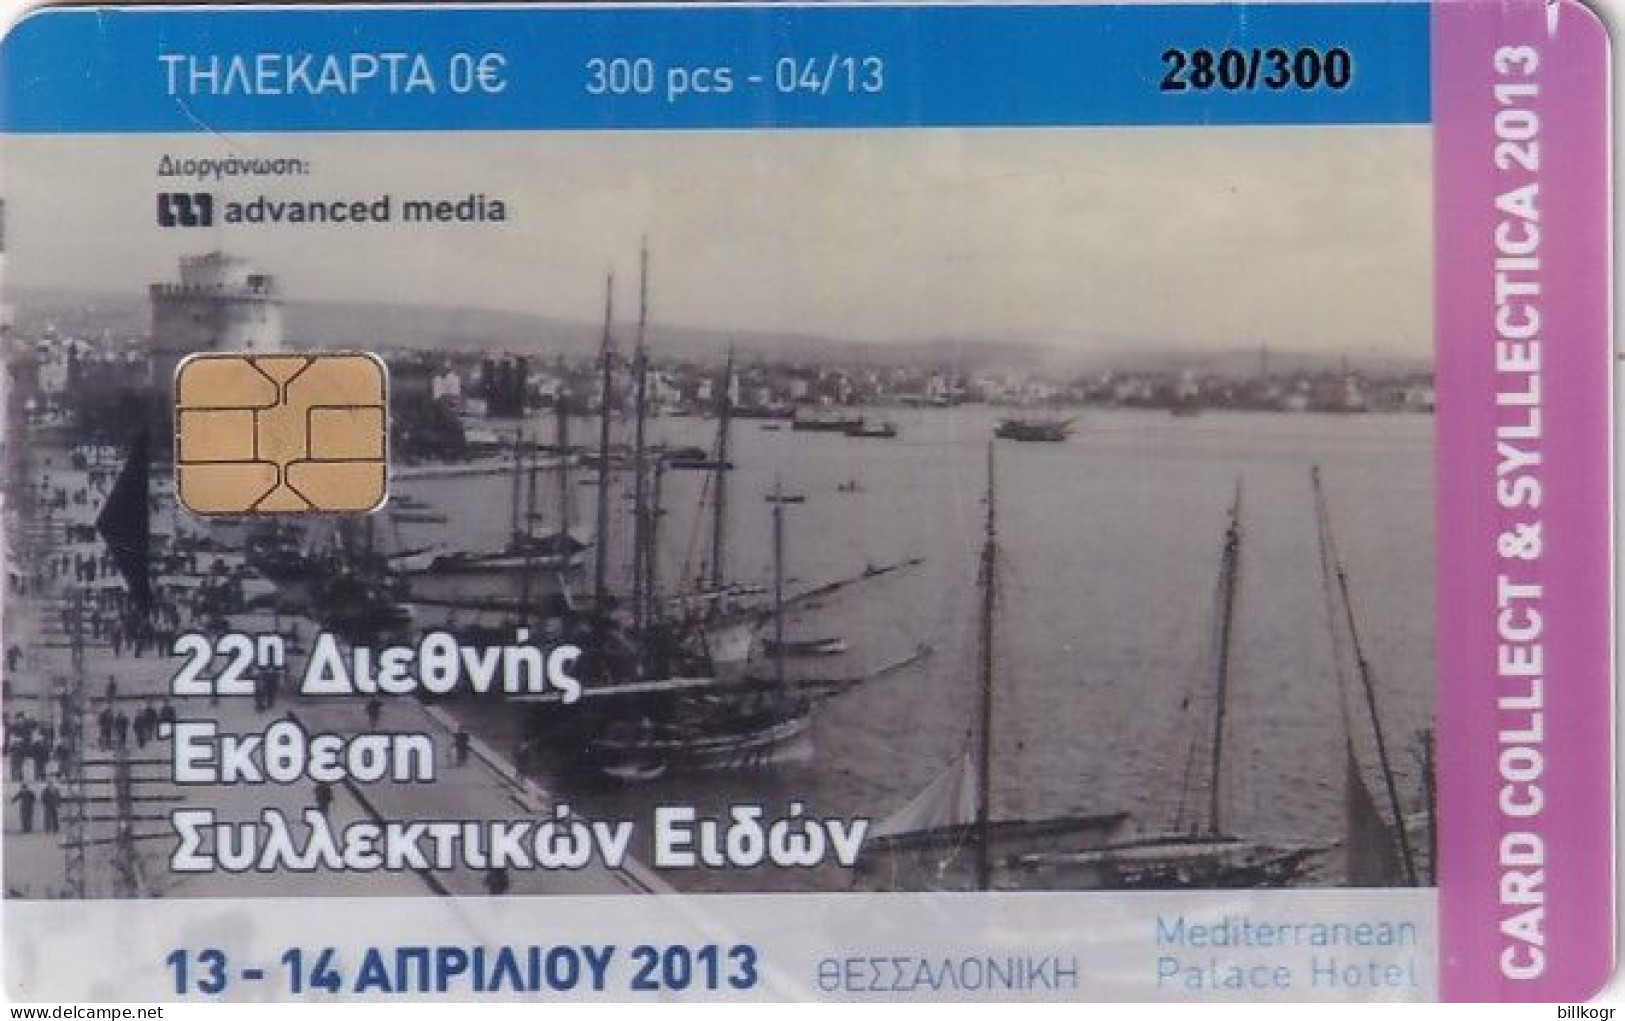 GREECE - Thessaloniki, Card Collect 2013, Exhibition In Thessaloniki, Tirage 300, 04/13 - Griechenland